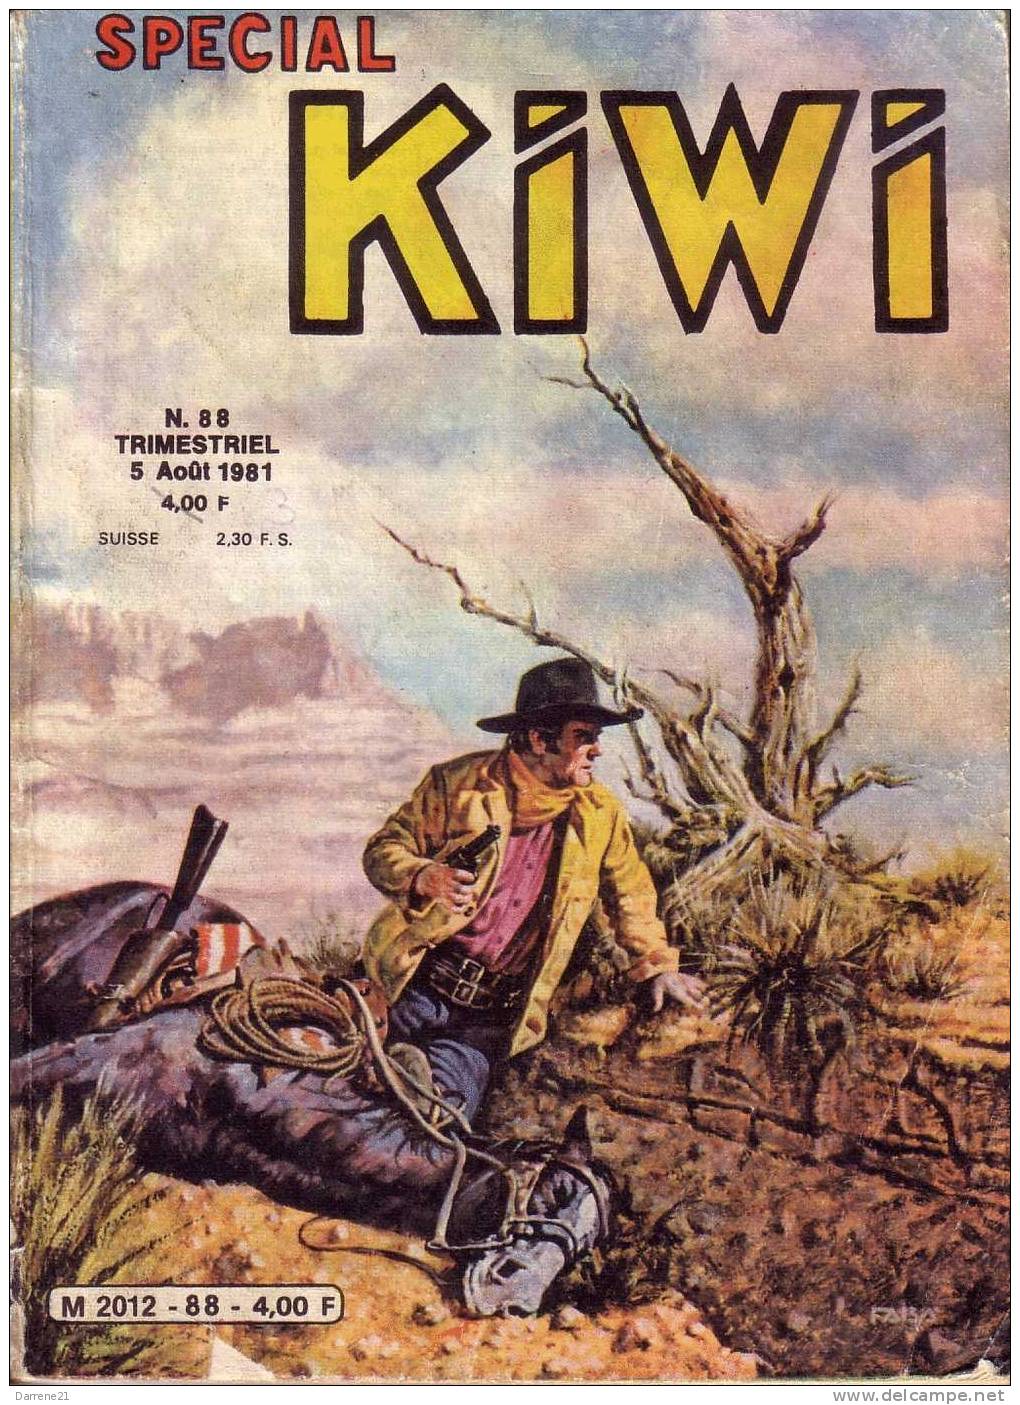 Special Kiwi 88 - Kiwi